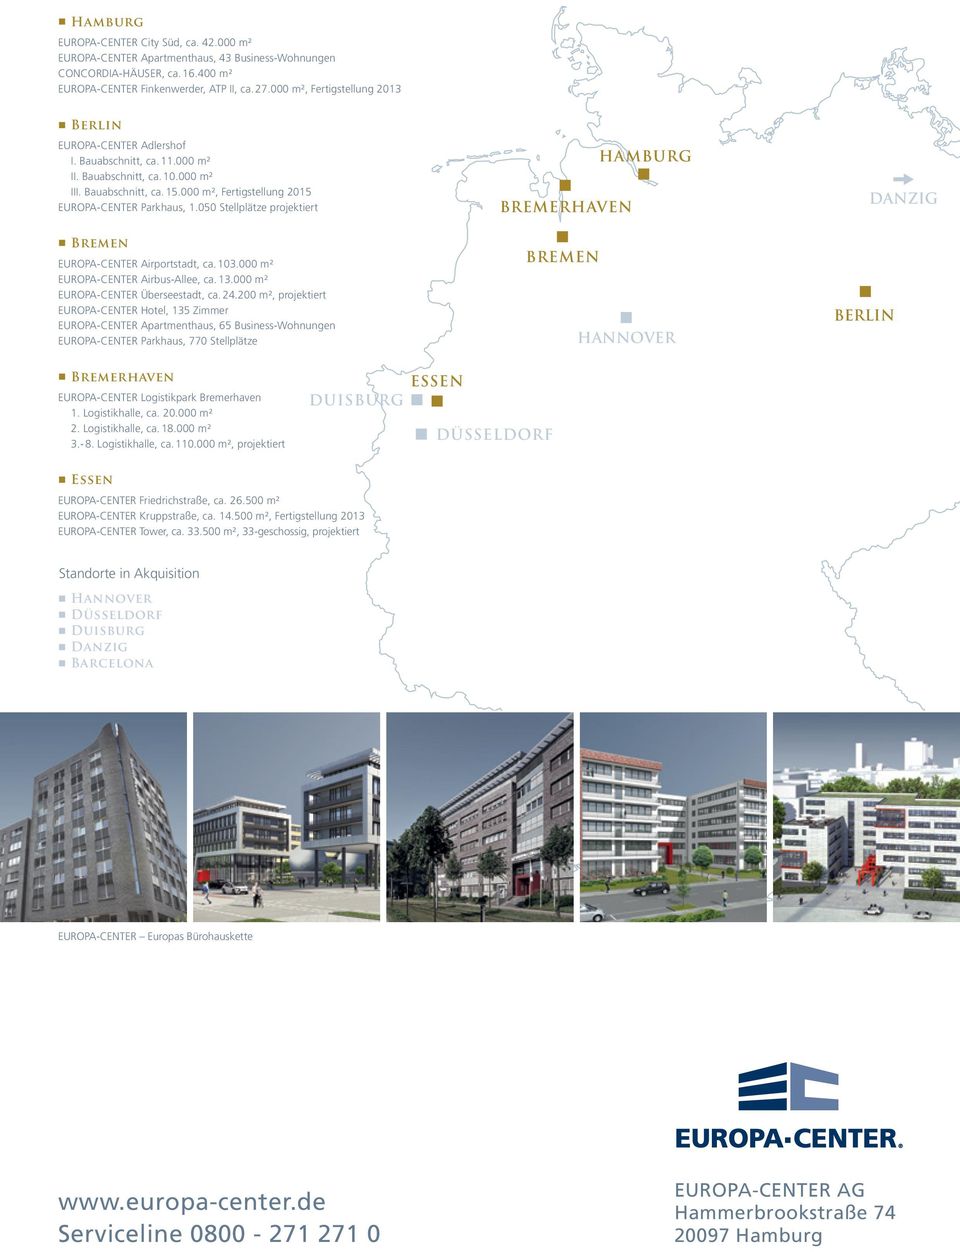 050 Stellplätze projektiert Breme EUROPA-CENTER Airportstadt, ca. 103.000 m² EUROPA-CENTER Airbus-Allee, ca. 13.000 m² EUROPA-CENTER Überseestadt, ca. 24.